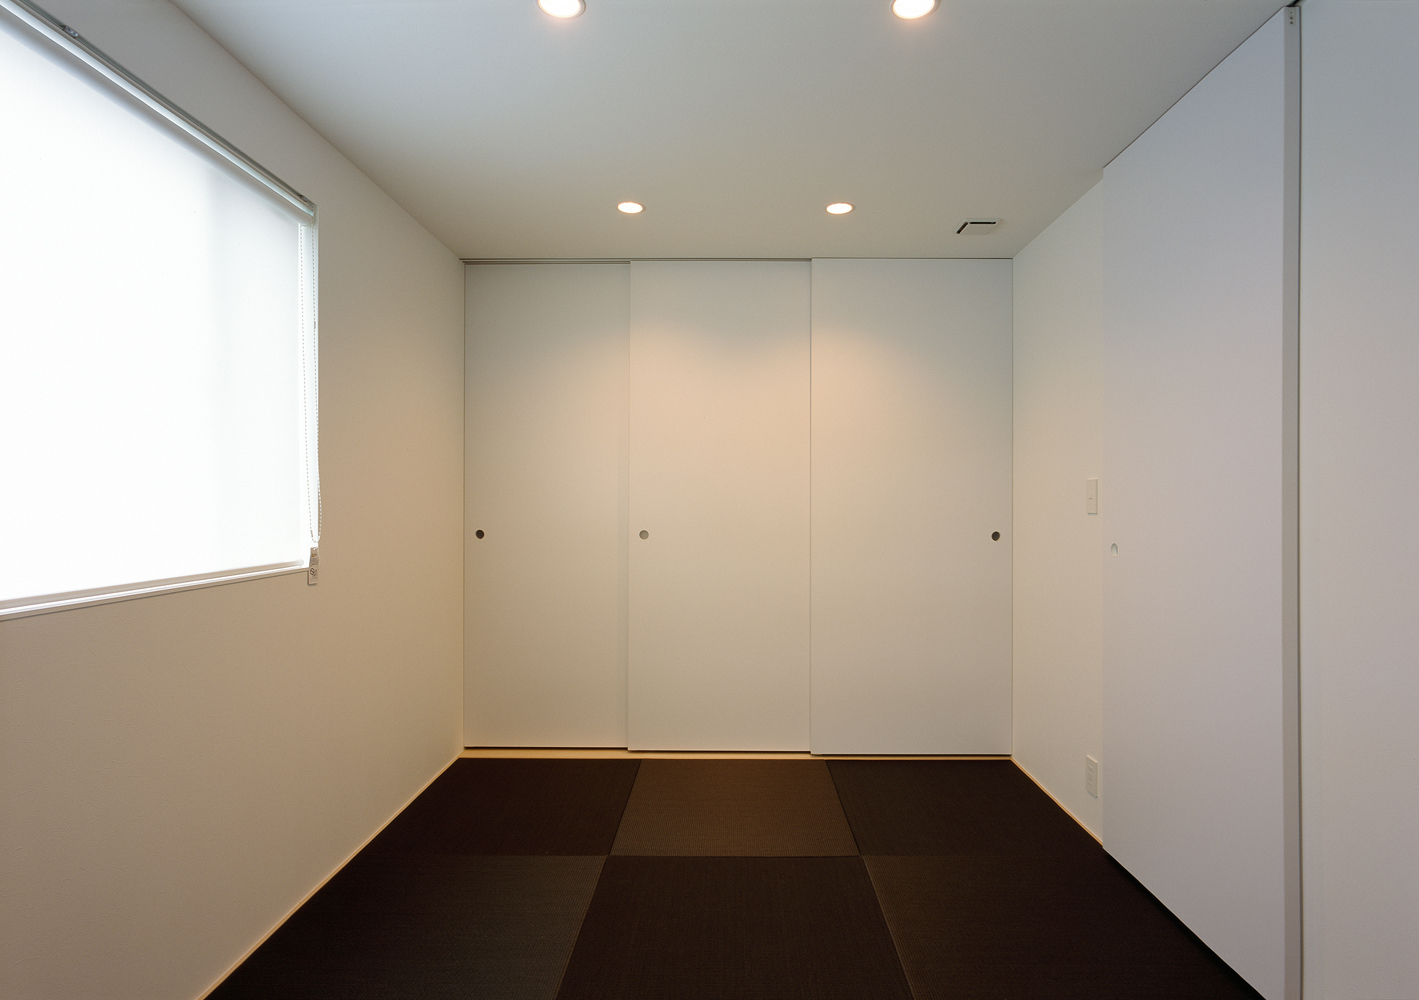 焦げ茶の琉球畳と白い壁天井でシンプル和モダンを演出した和室